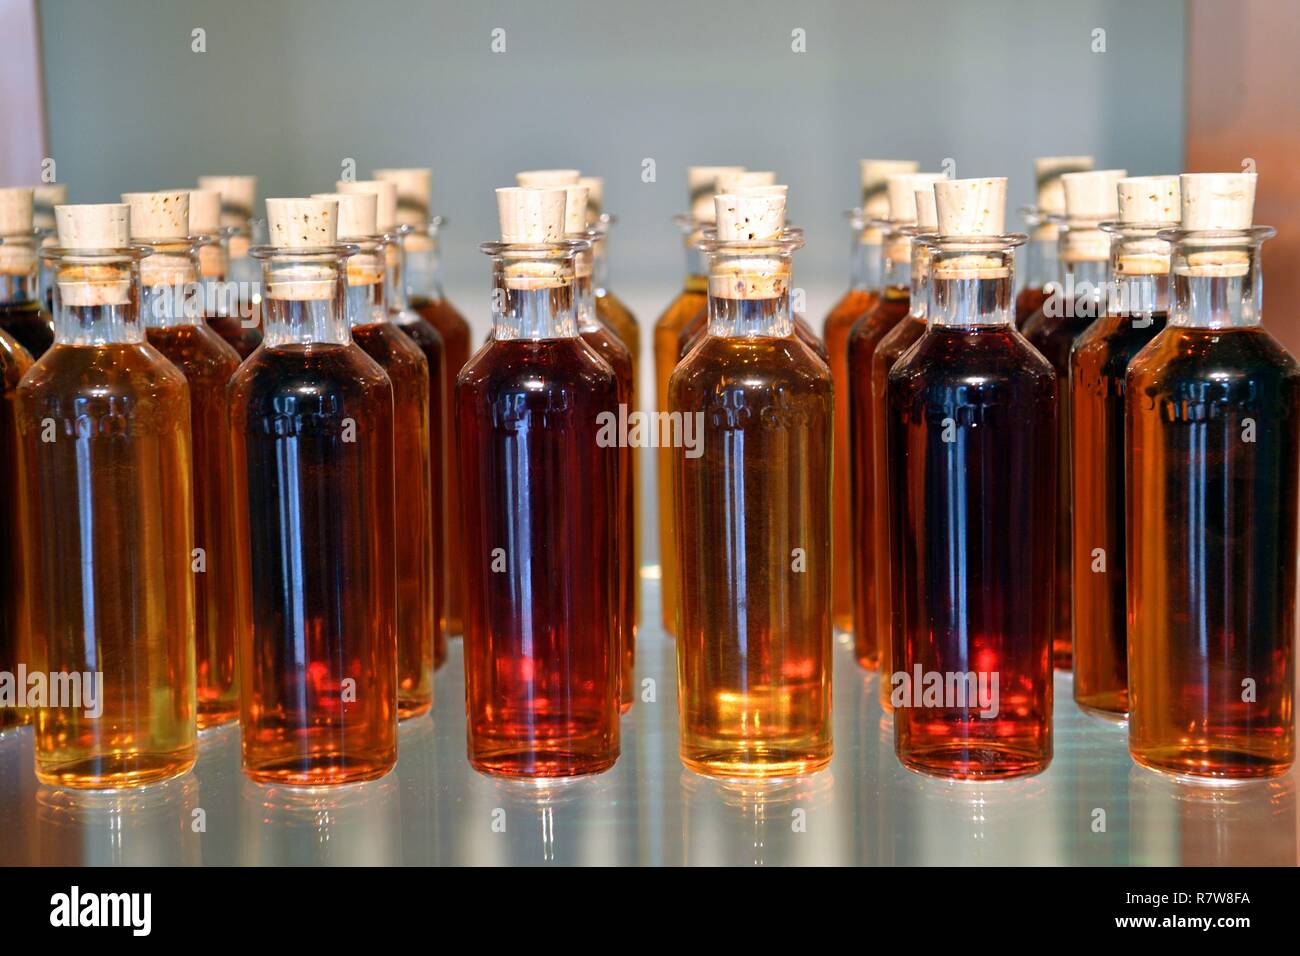 France, Charente, Cognac, Hennessy cognac house, bottles prepared for tasting Stock Photo